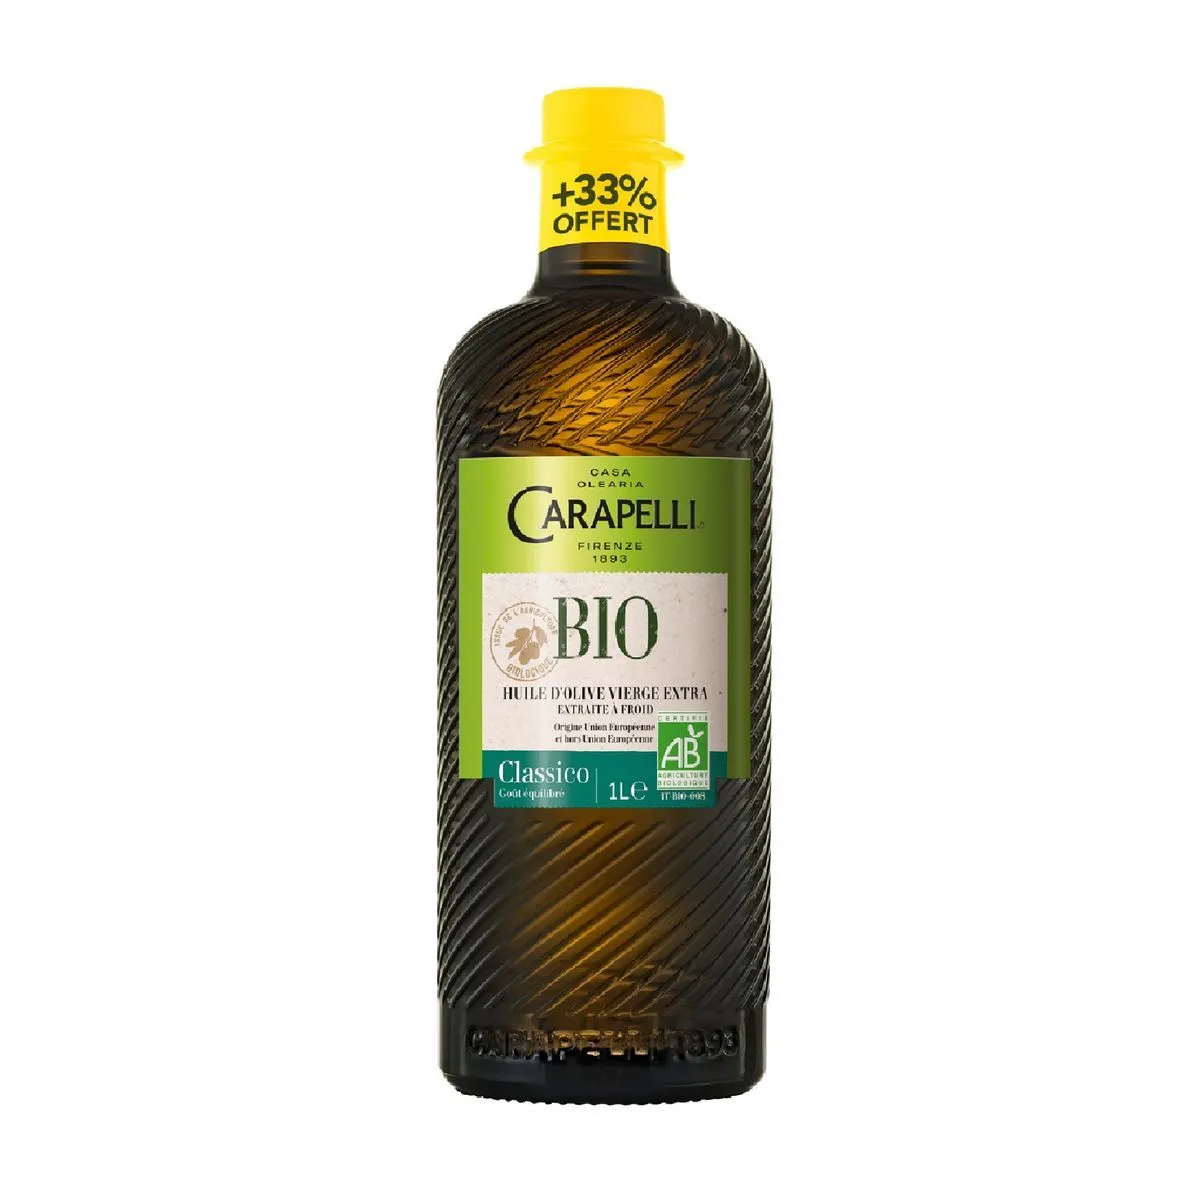 huile d'olive vierge extra classico bio carapelli